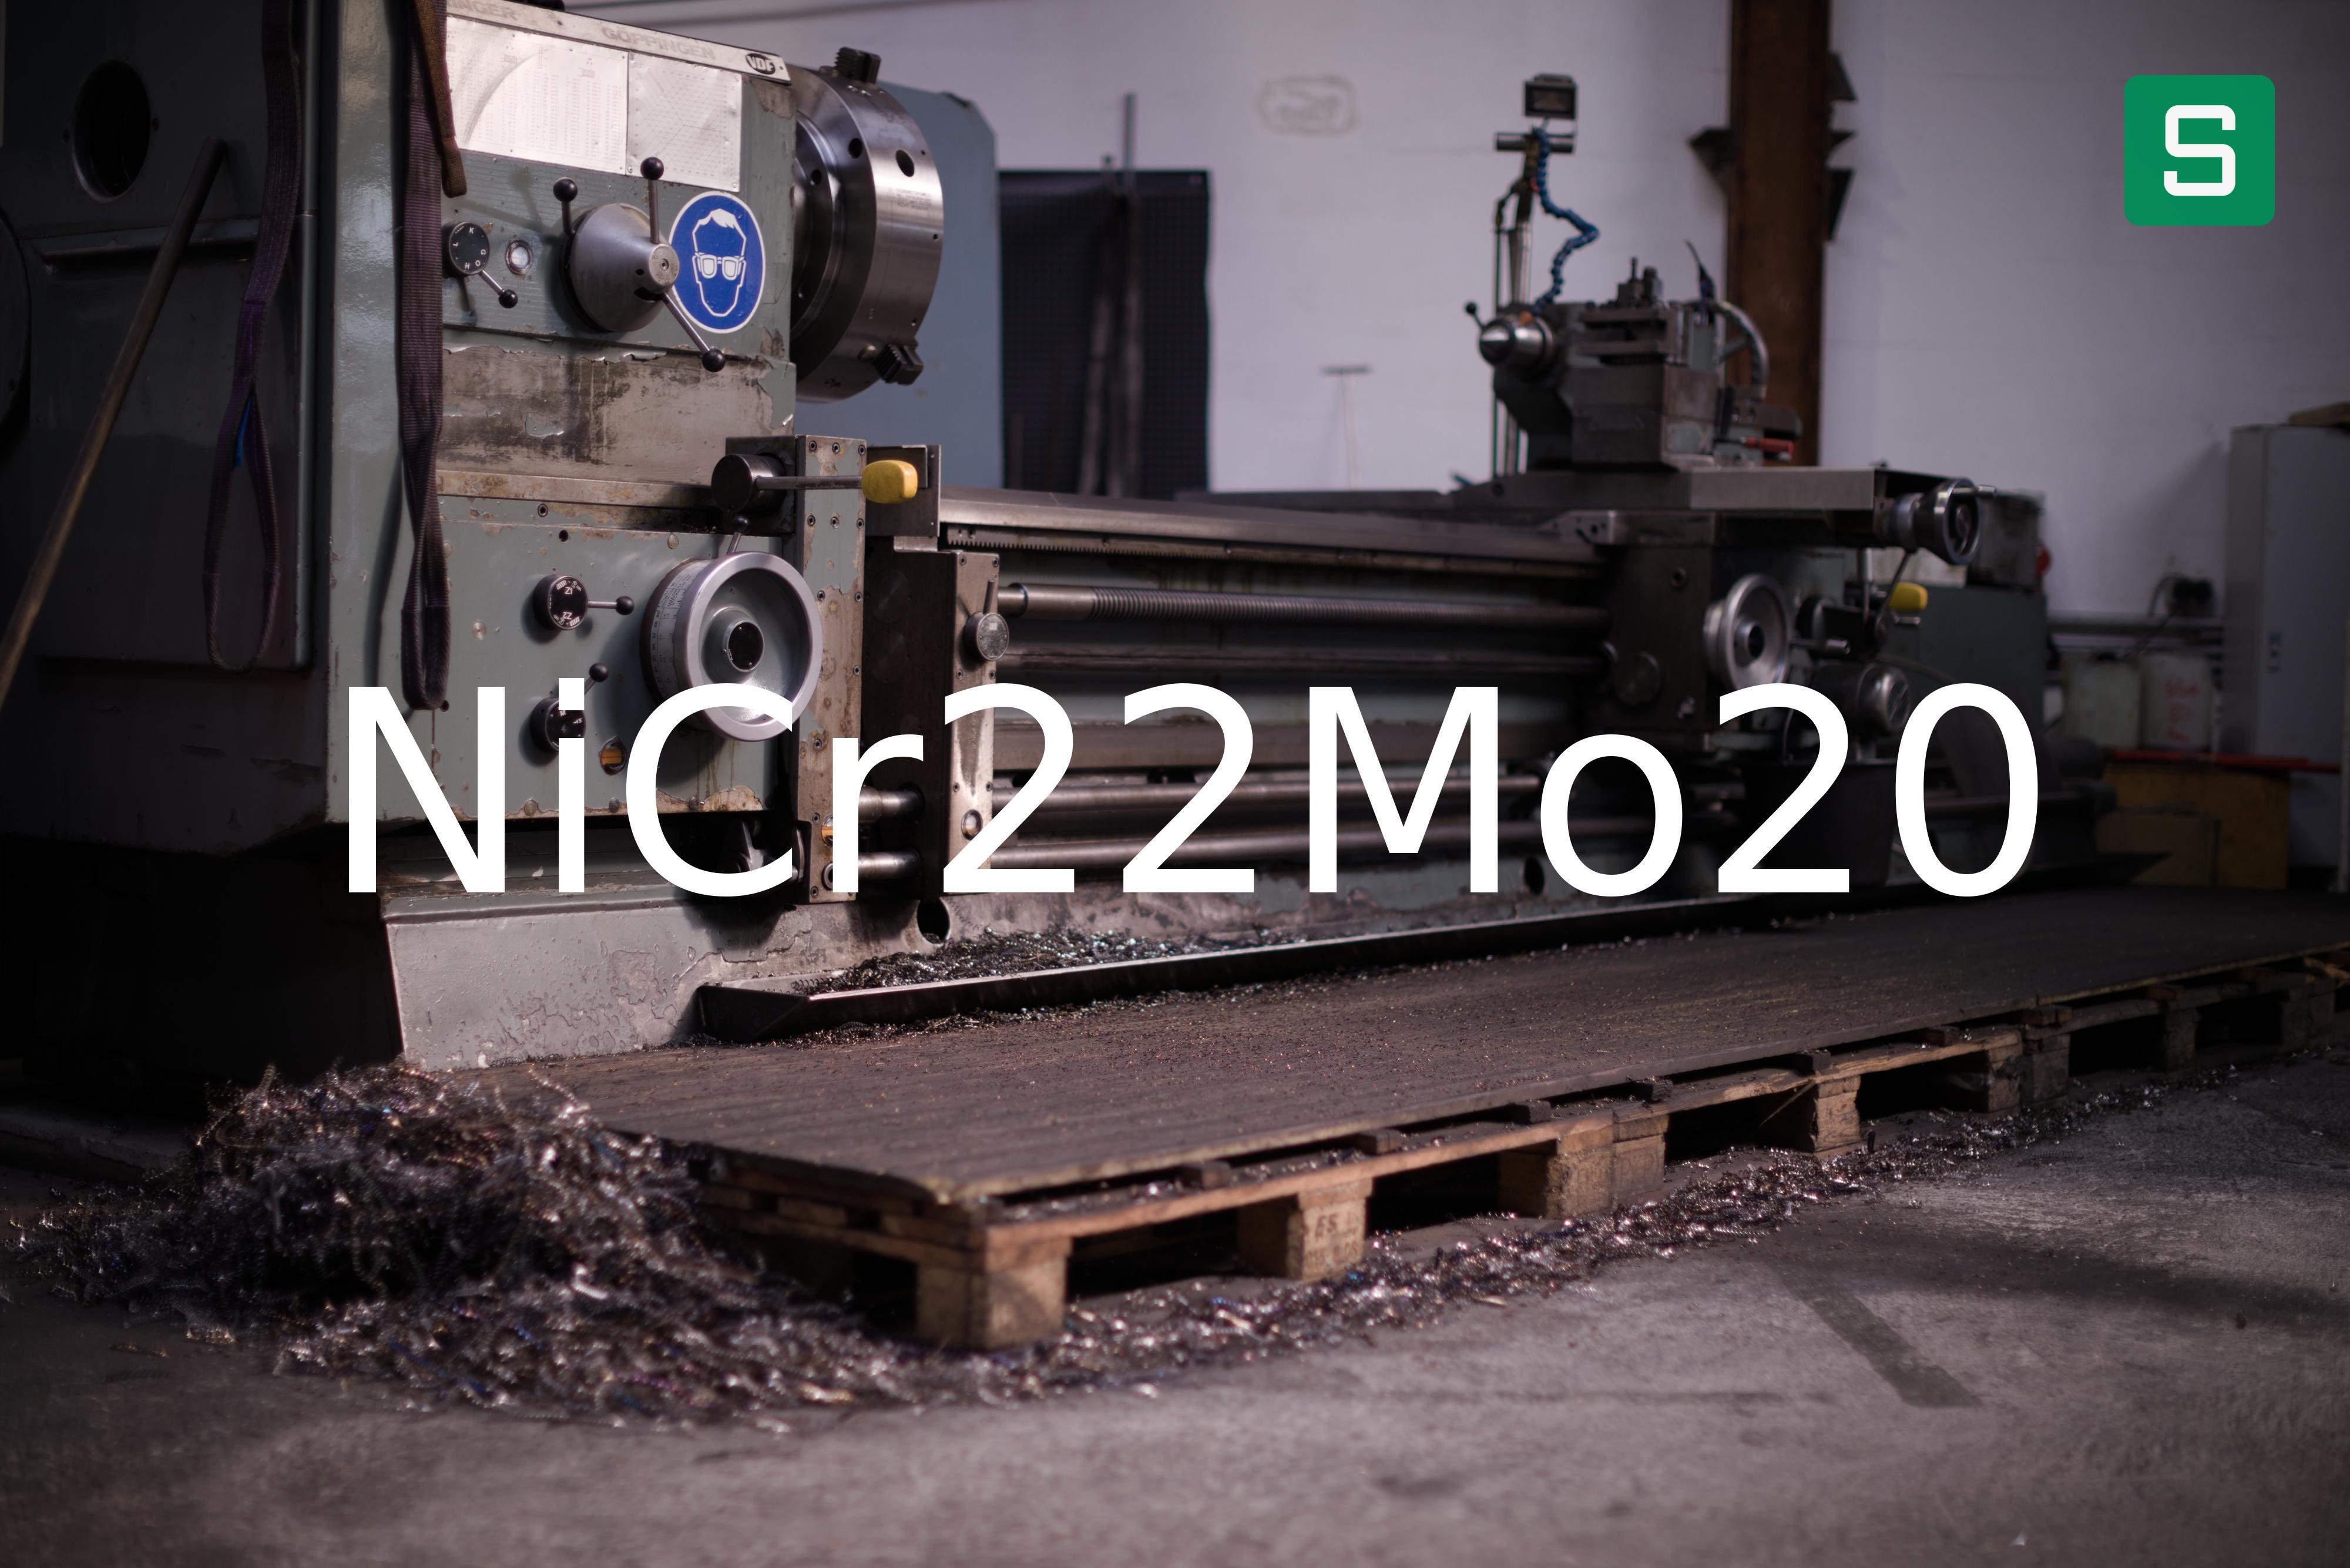 Steel Material: NiCr22Mo20